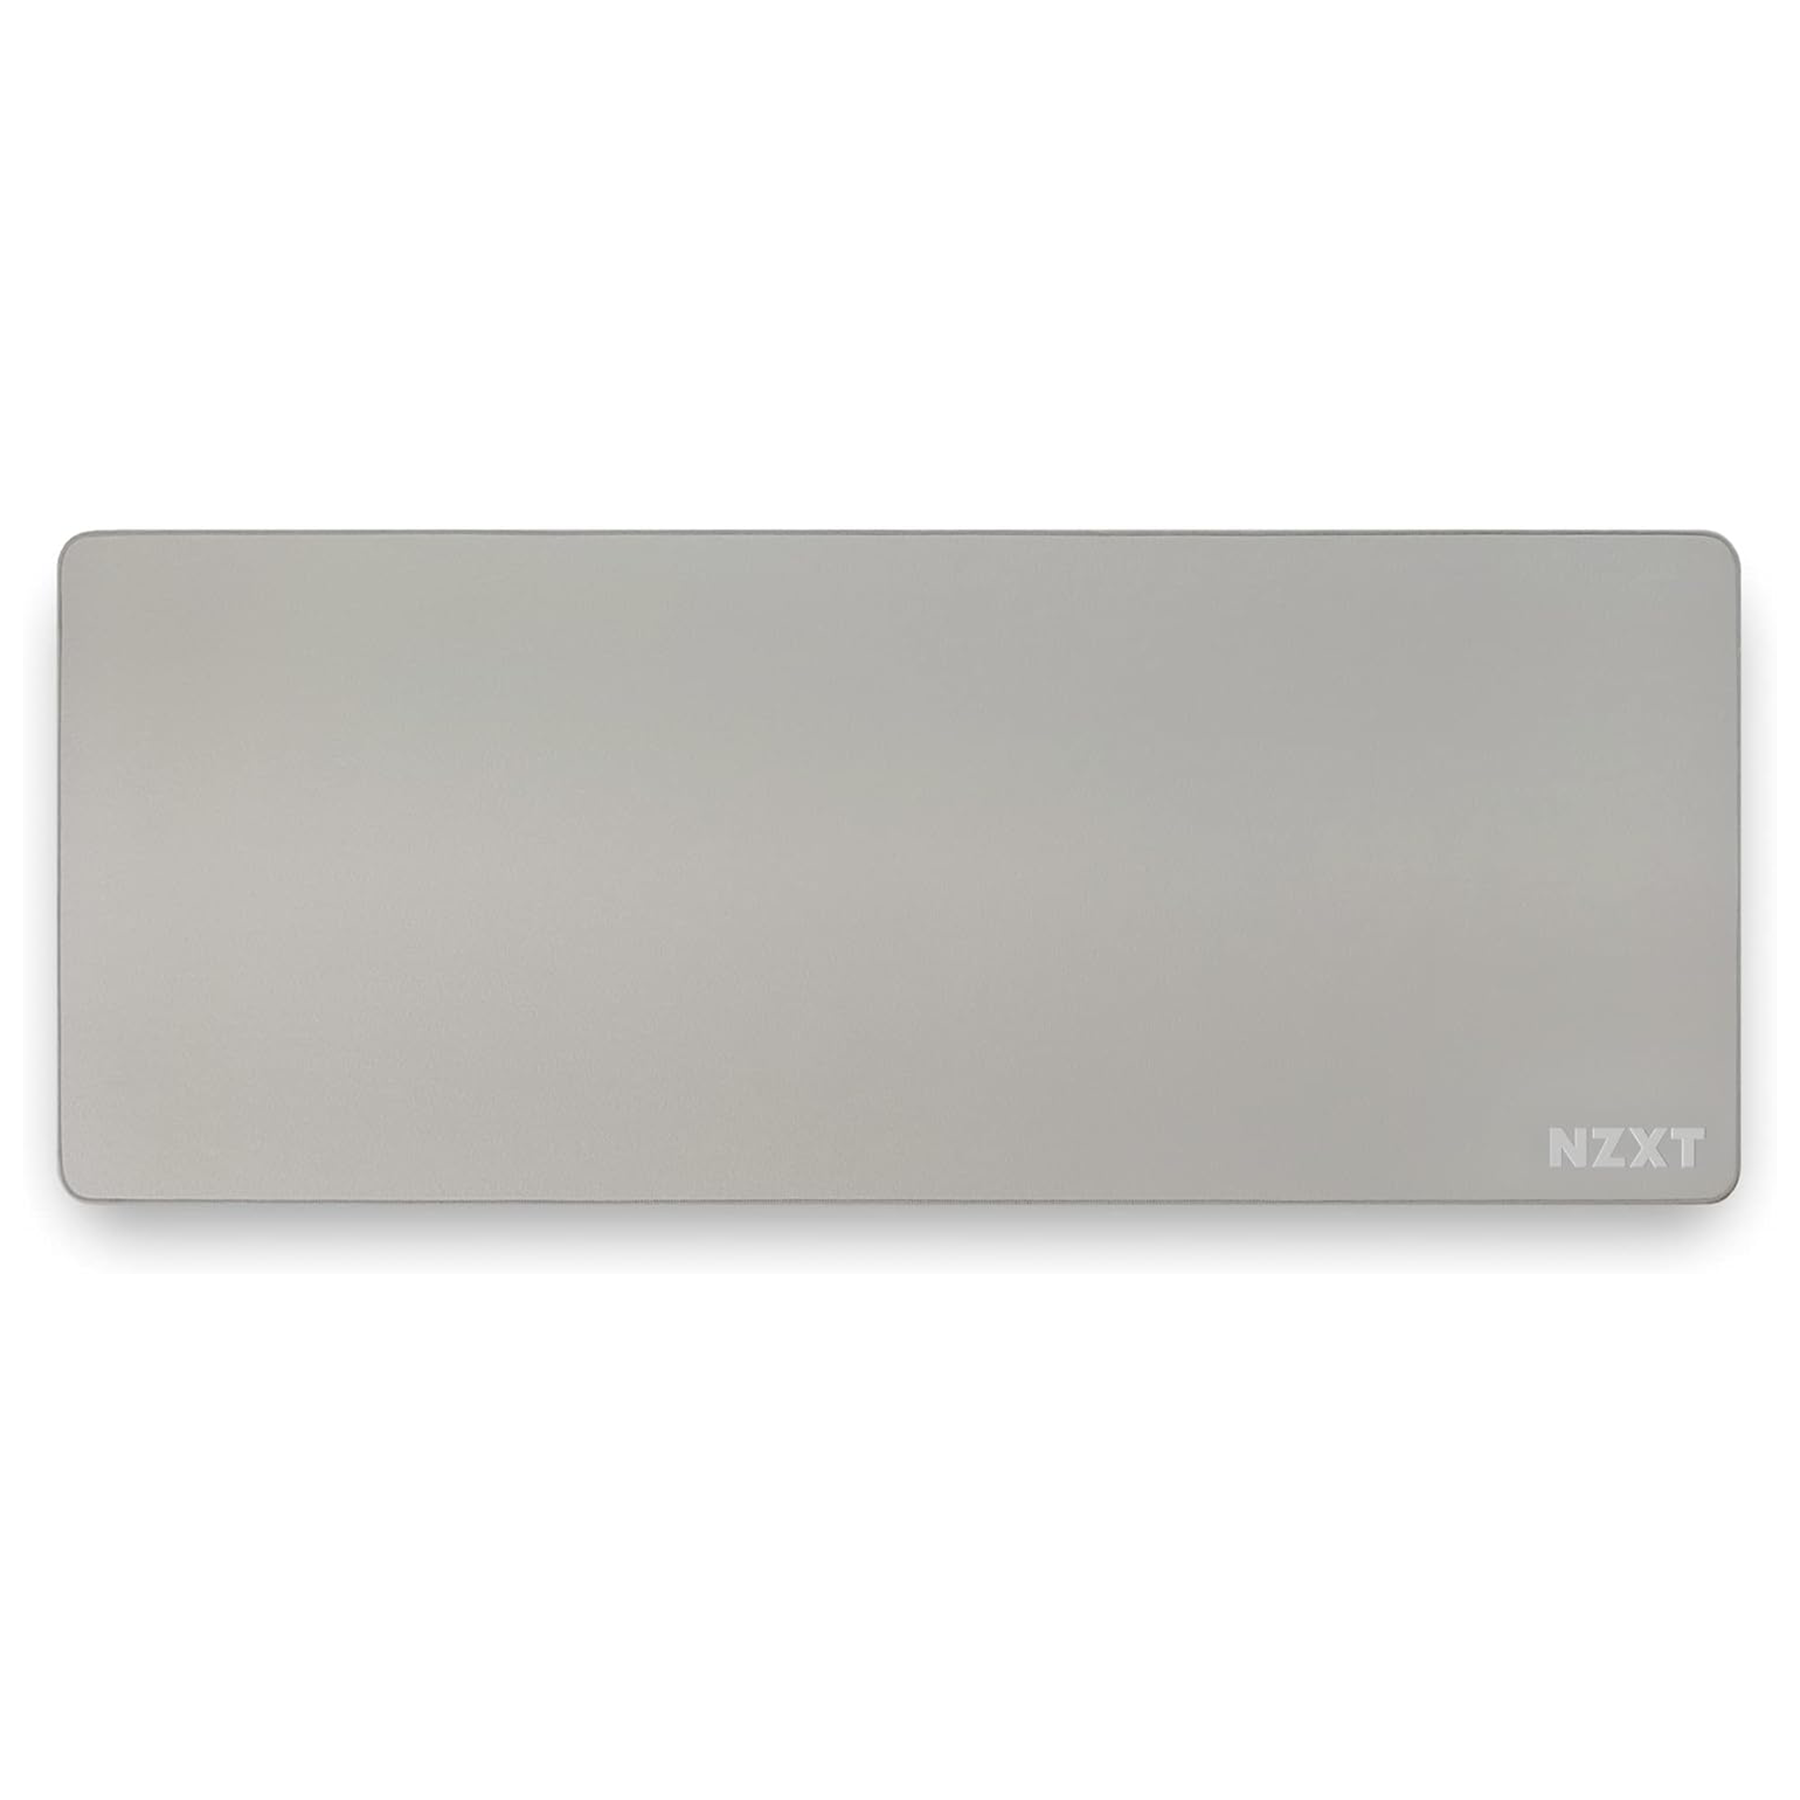 NZXT MXP700 White Tapis de souris NZXT Maroc